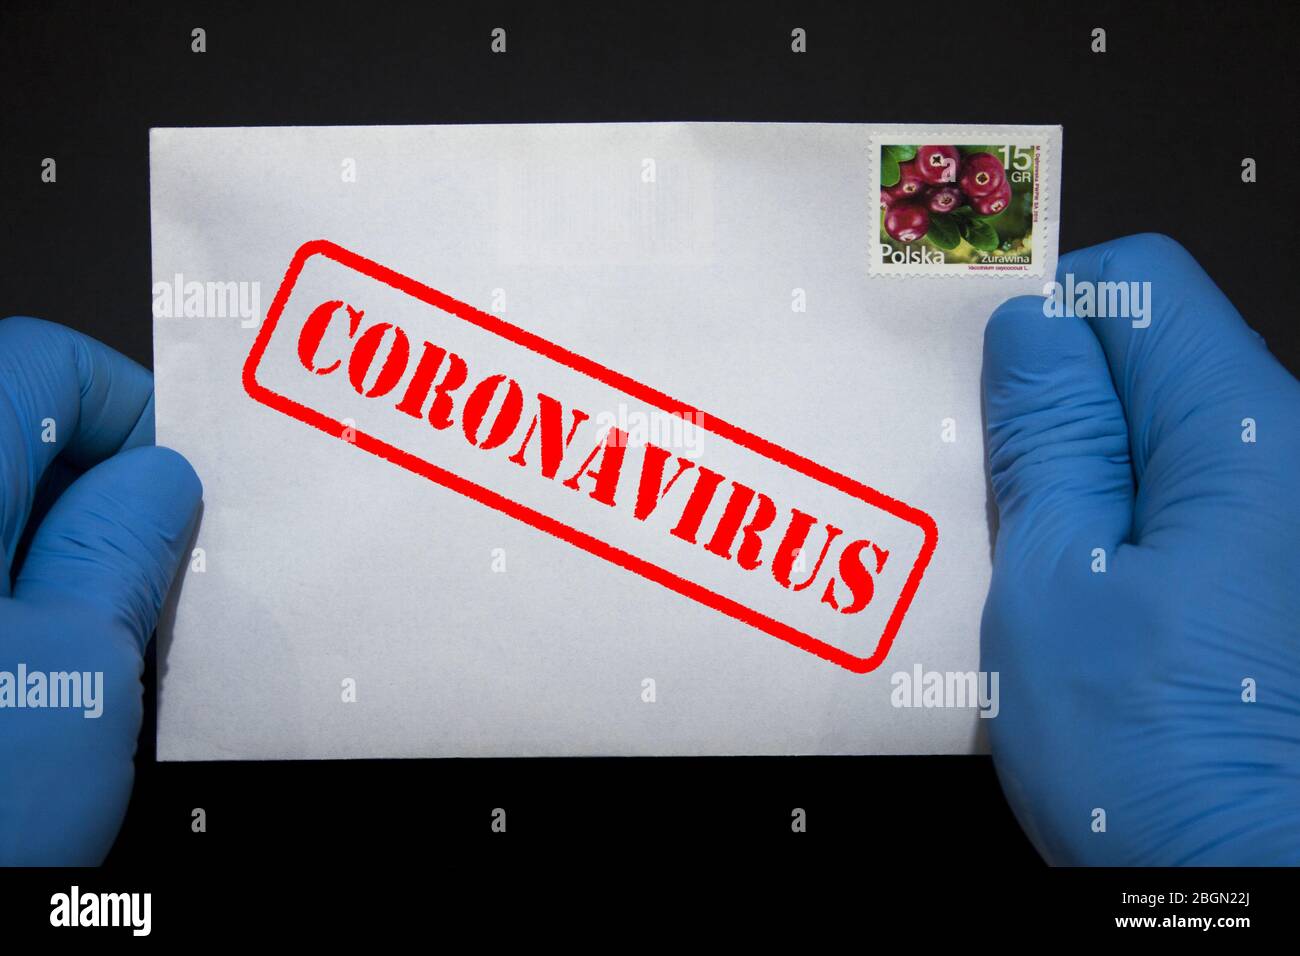 Manos humanas en guantes protectores con una carta que puede contener el virus COVID-19. Los artículos postales pueden propagar el Coronavirus. Foto de stock